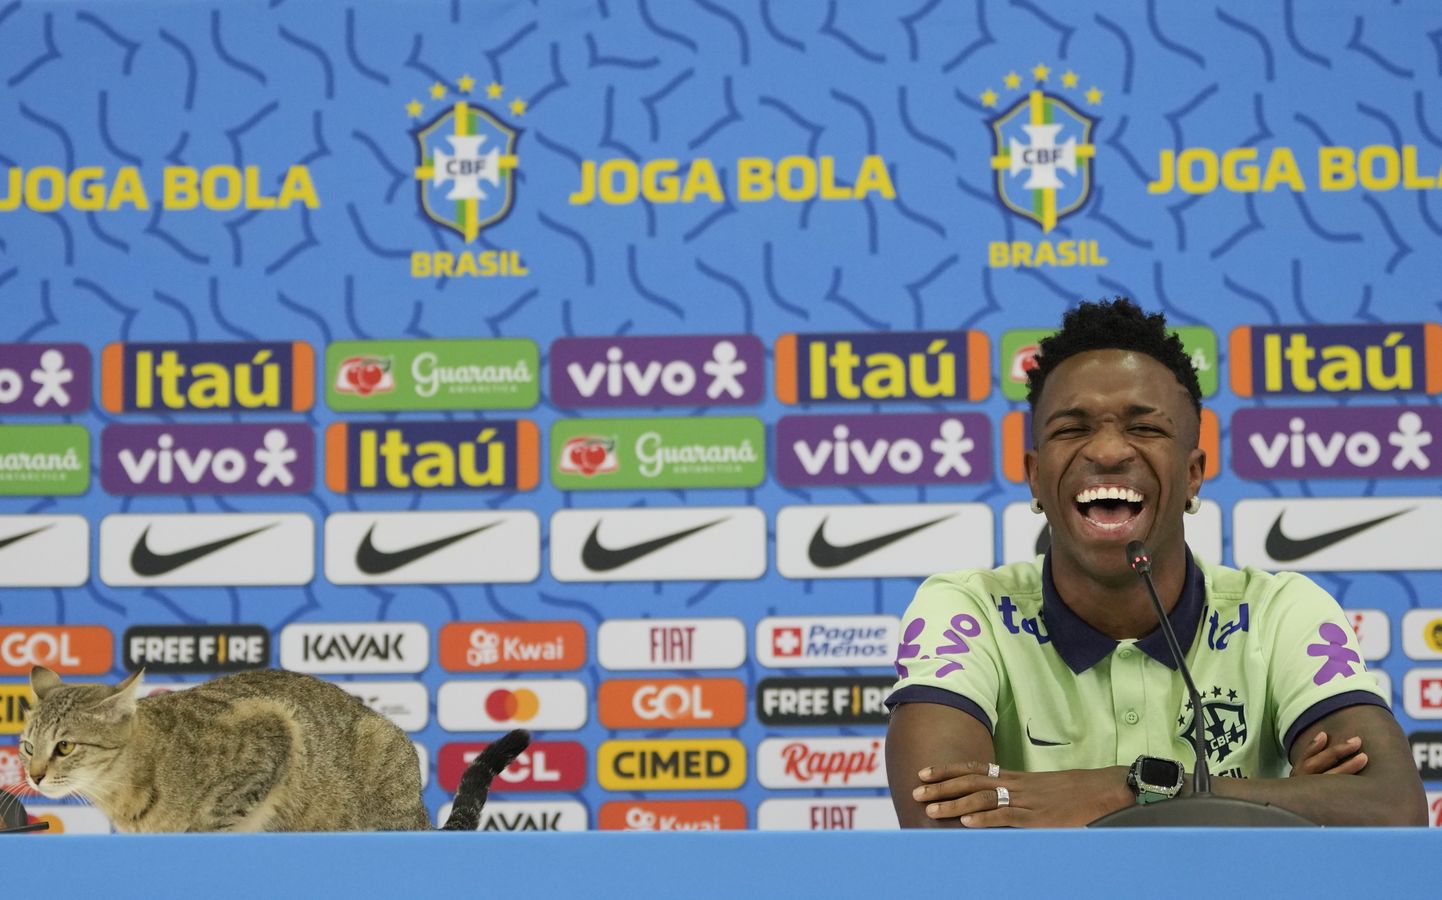 Vinicius Juniorile pakkus kassi kohalolu nalja, ent nüüd seisab Brasiilia jalgpalliliit silmitsi suure kahjunõudega.